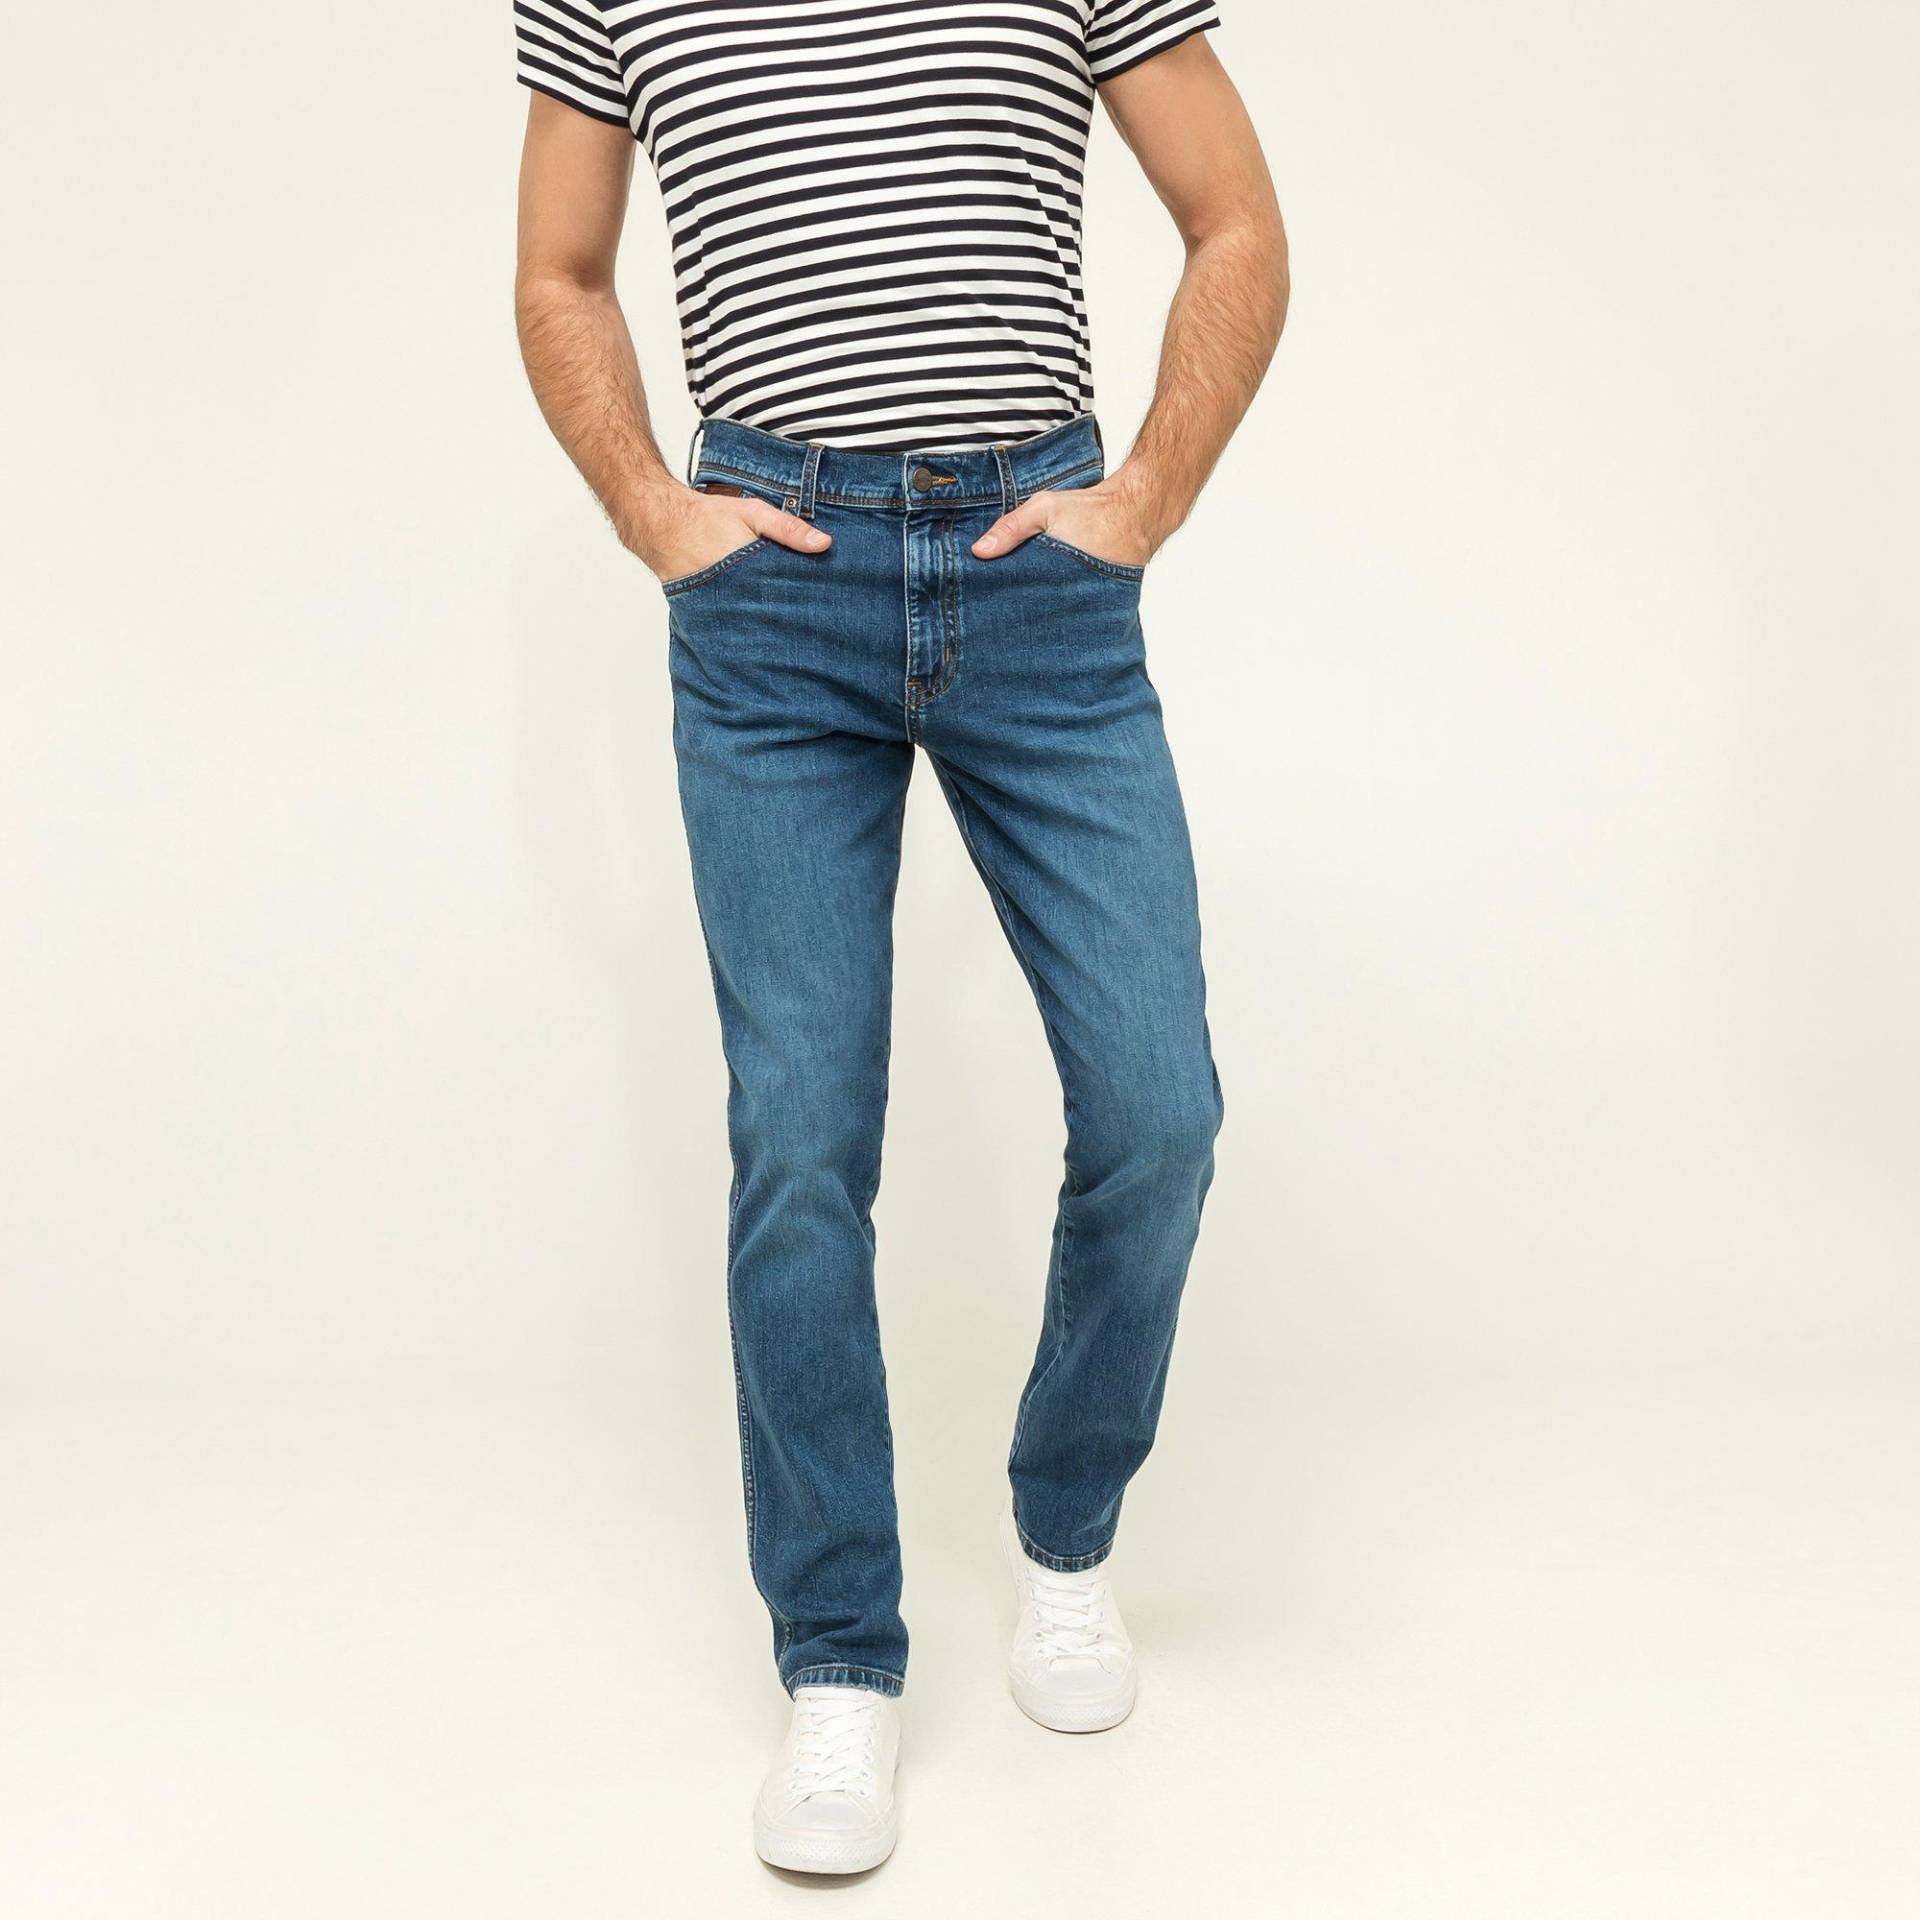 Jeans, Slim Fit Herren Blau Denim L34/W46 von Wrangler